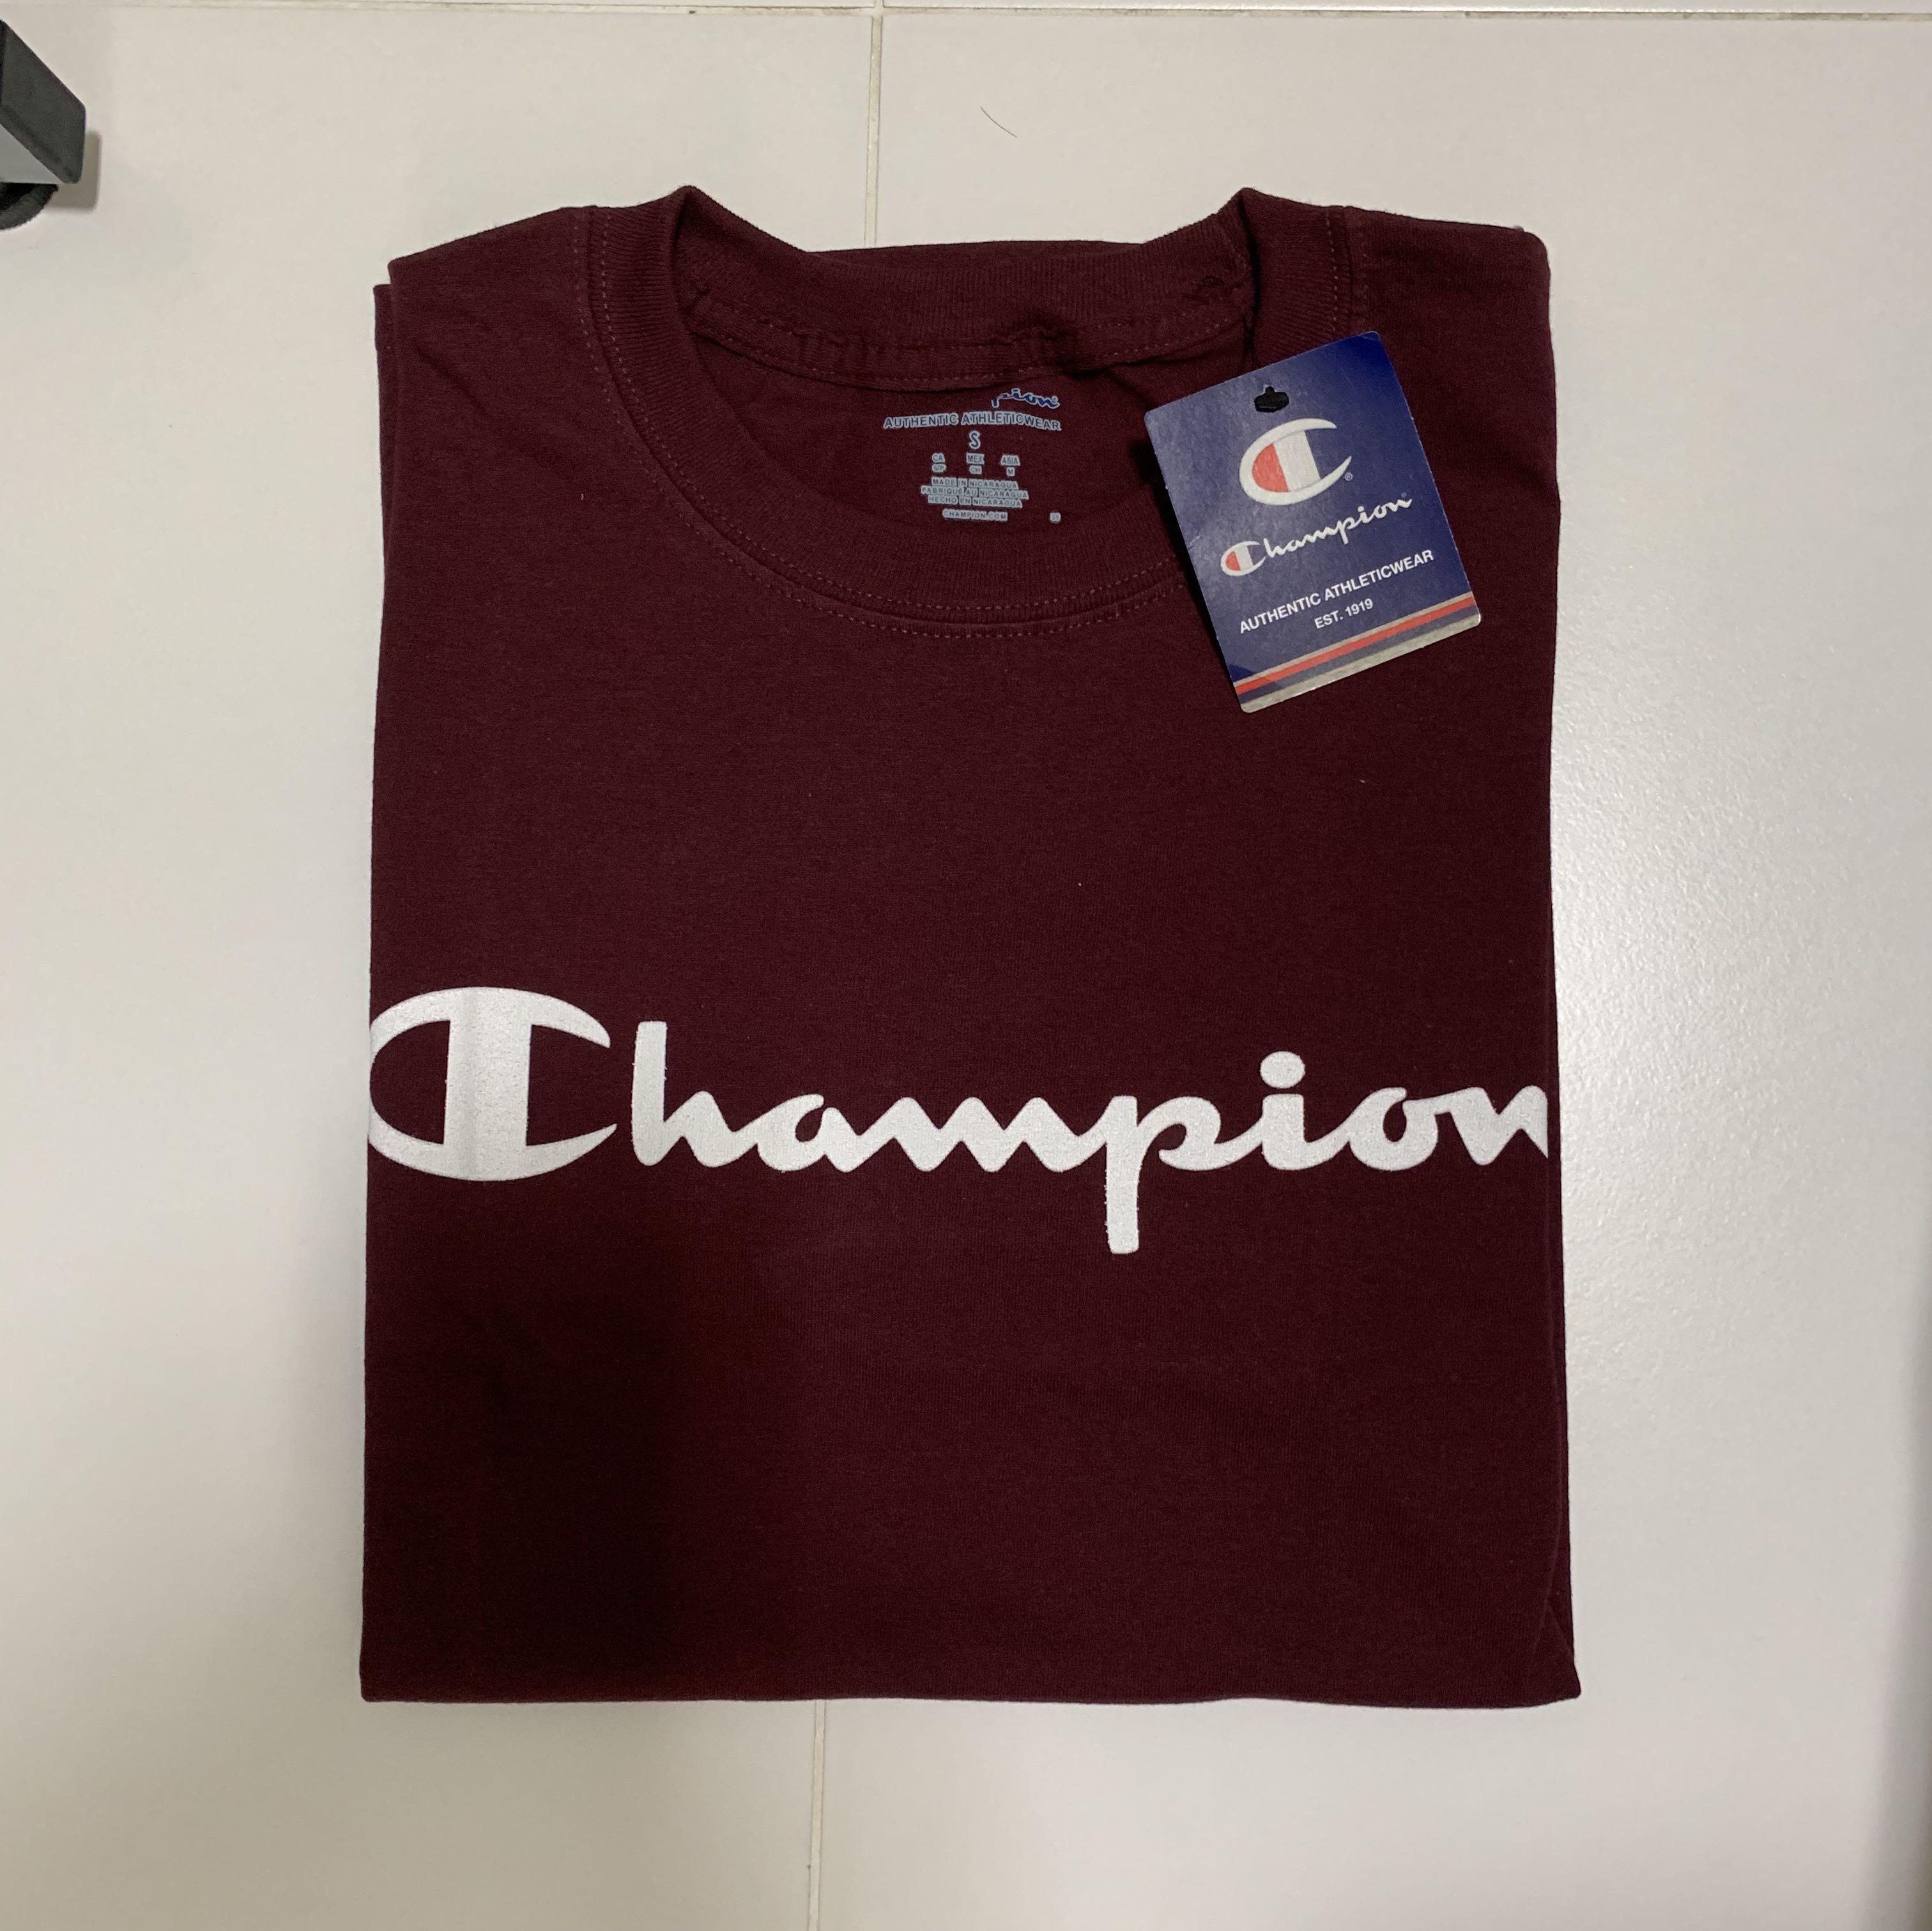 real champion shirt vs fake